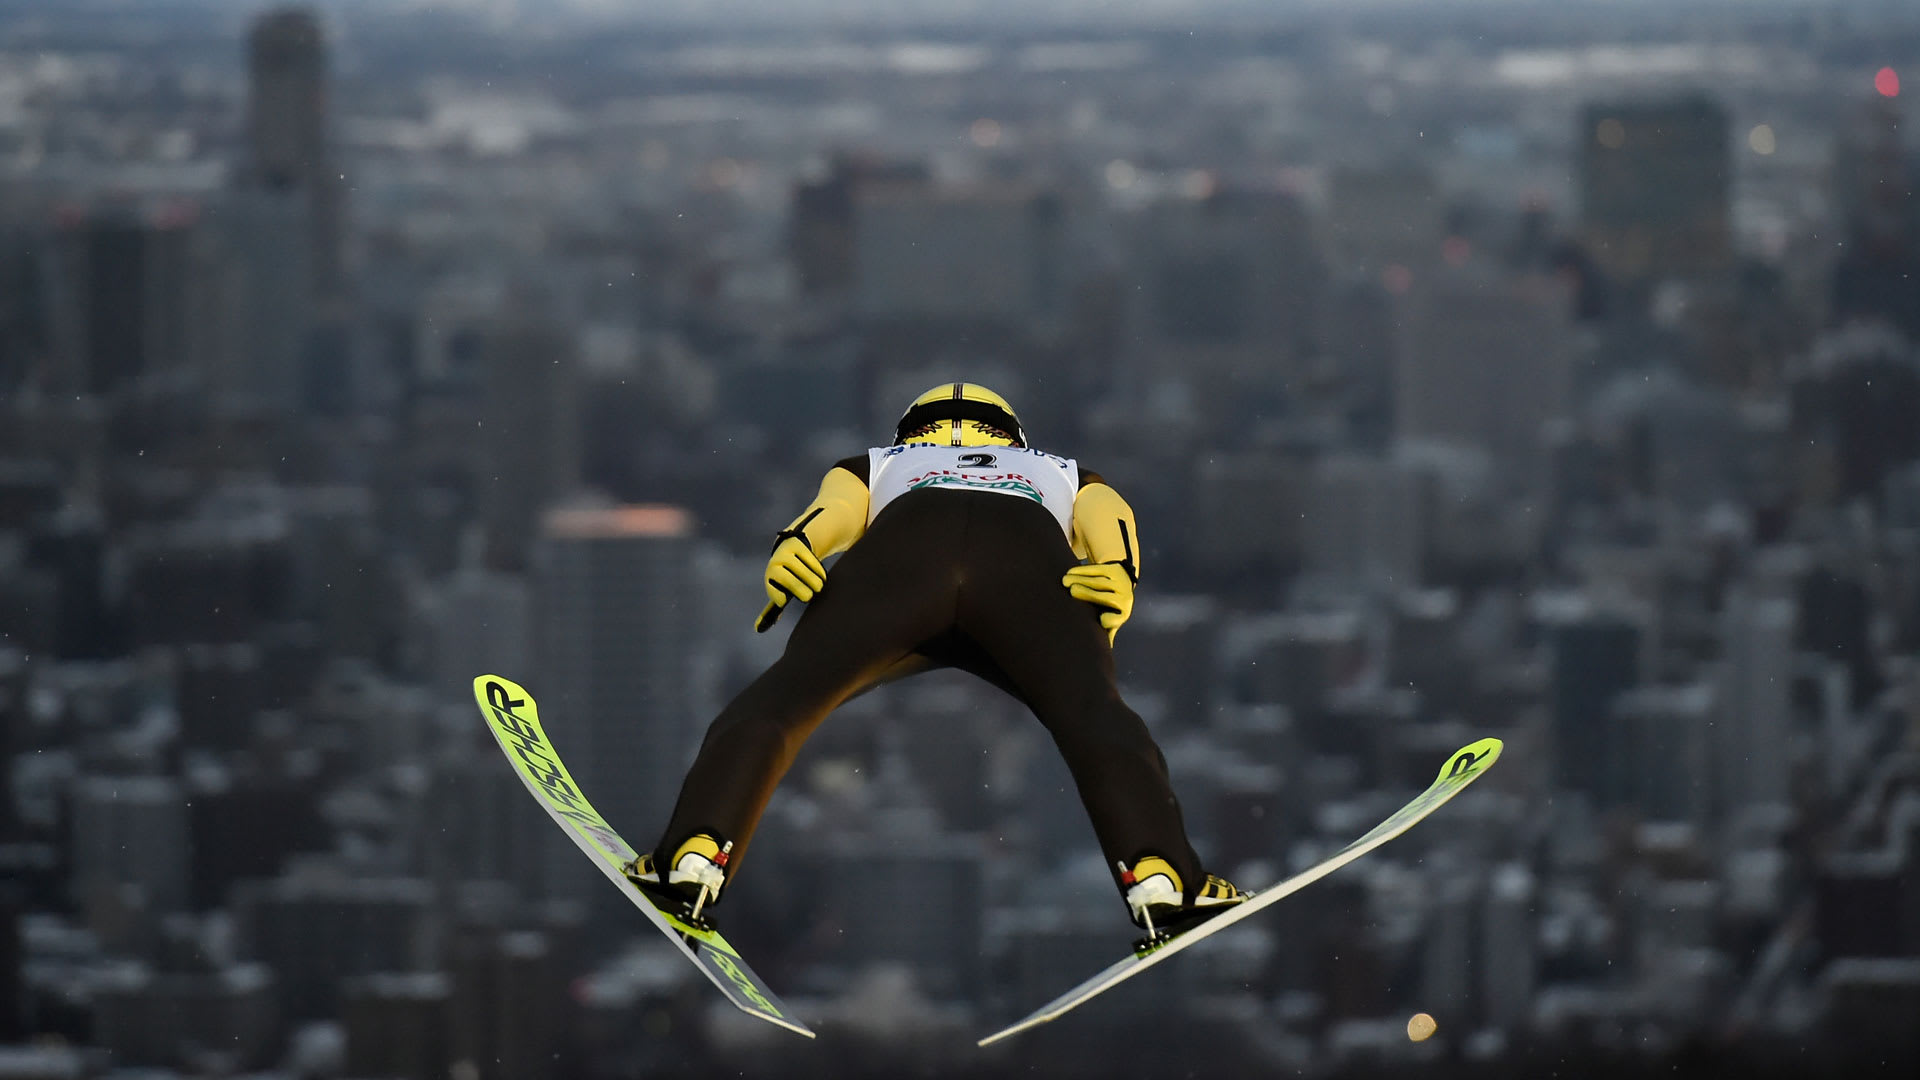 第60回stvカップスキージャンプ競技大会の放送予定 1月10日開催